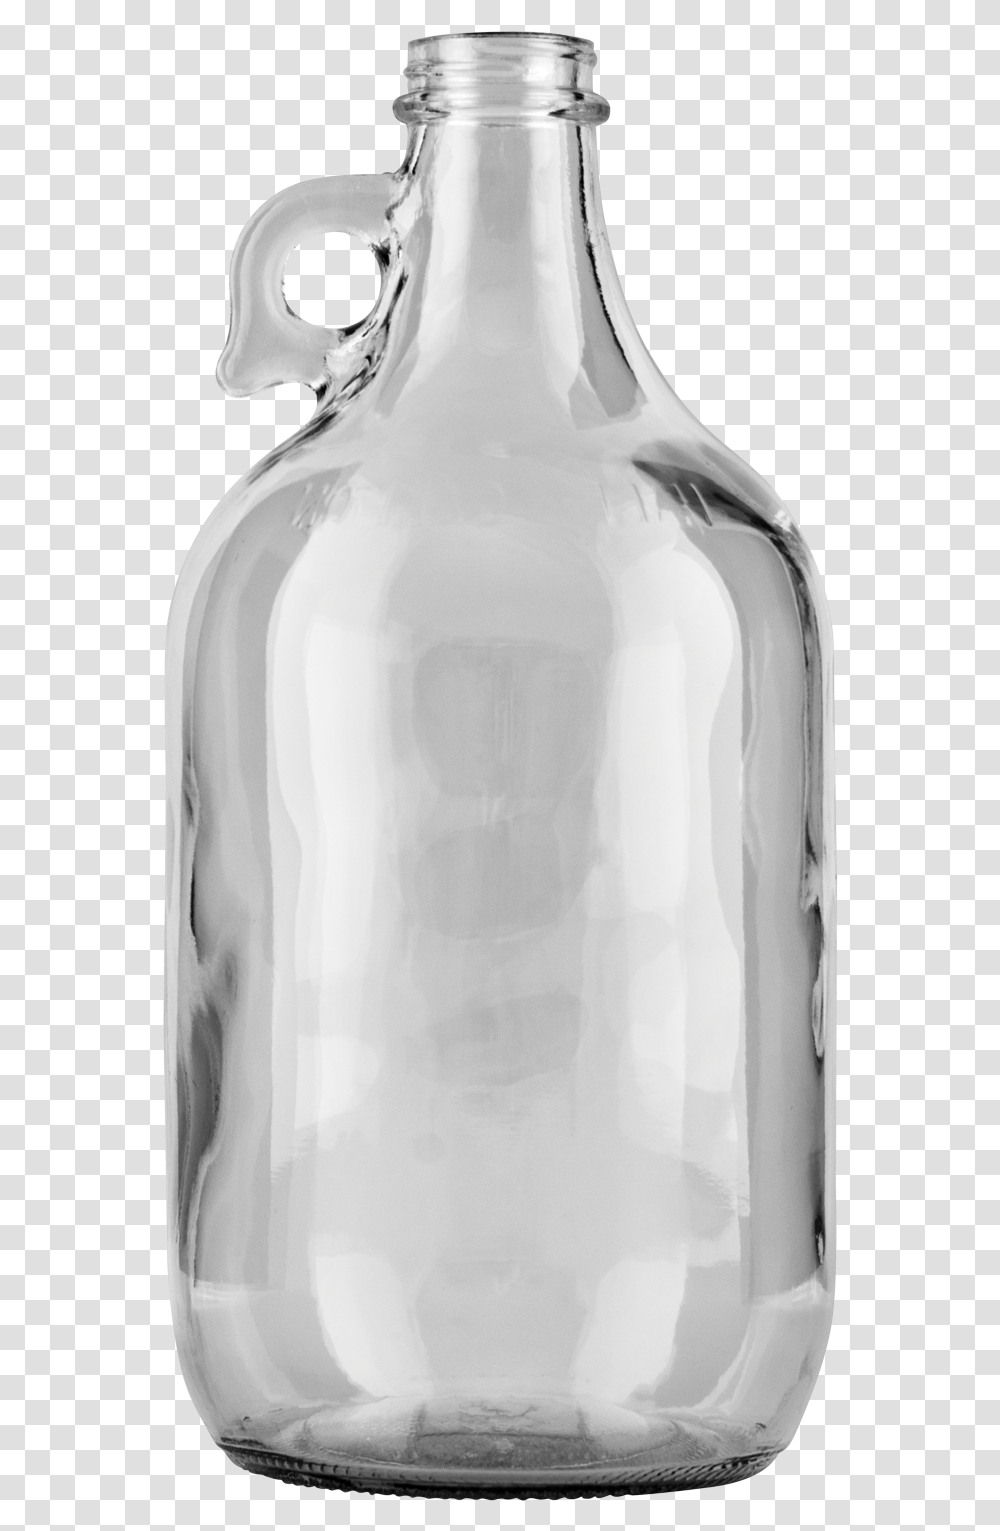 Water Jug Glass Bottle, Jar, Cylinder Transparent Png